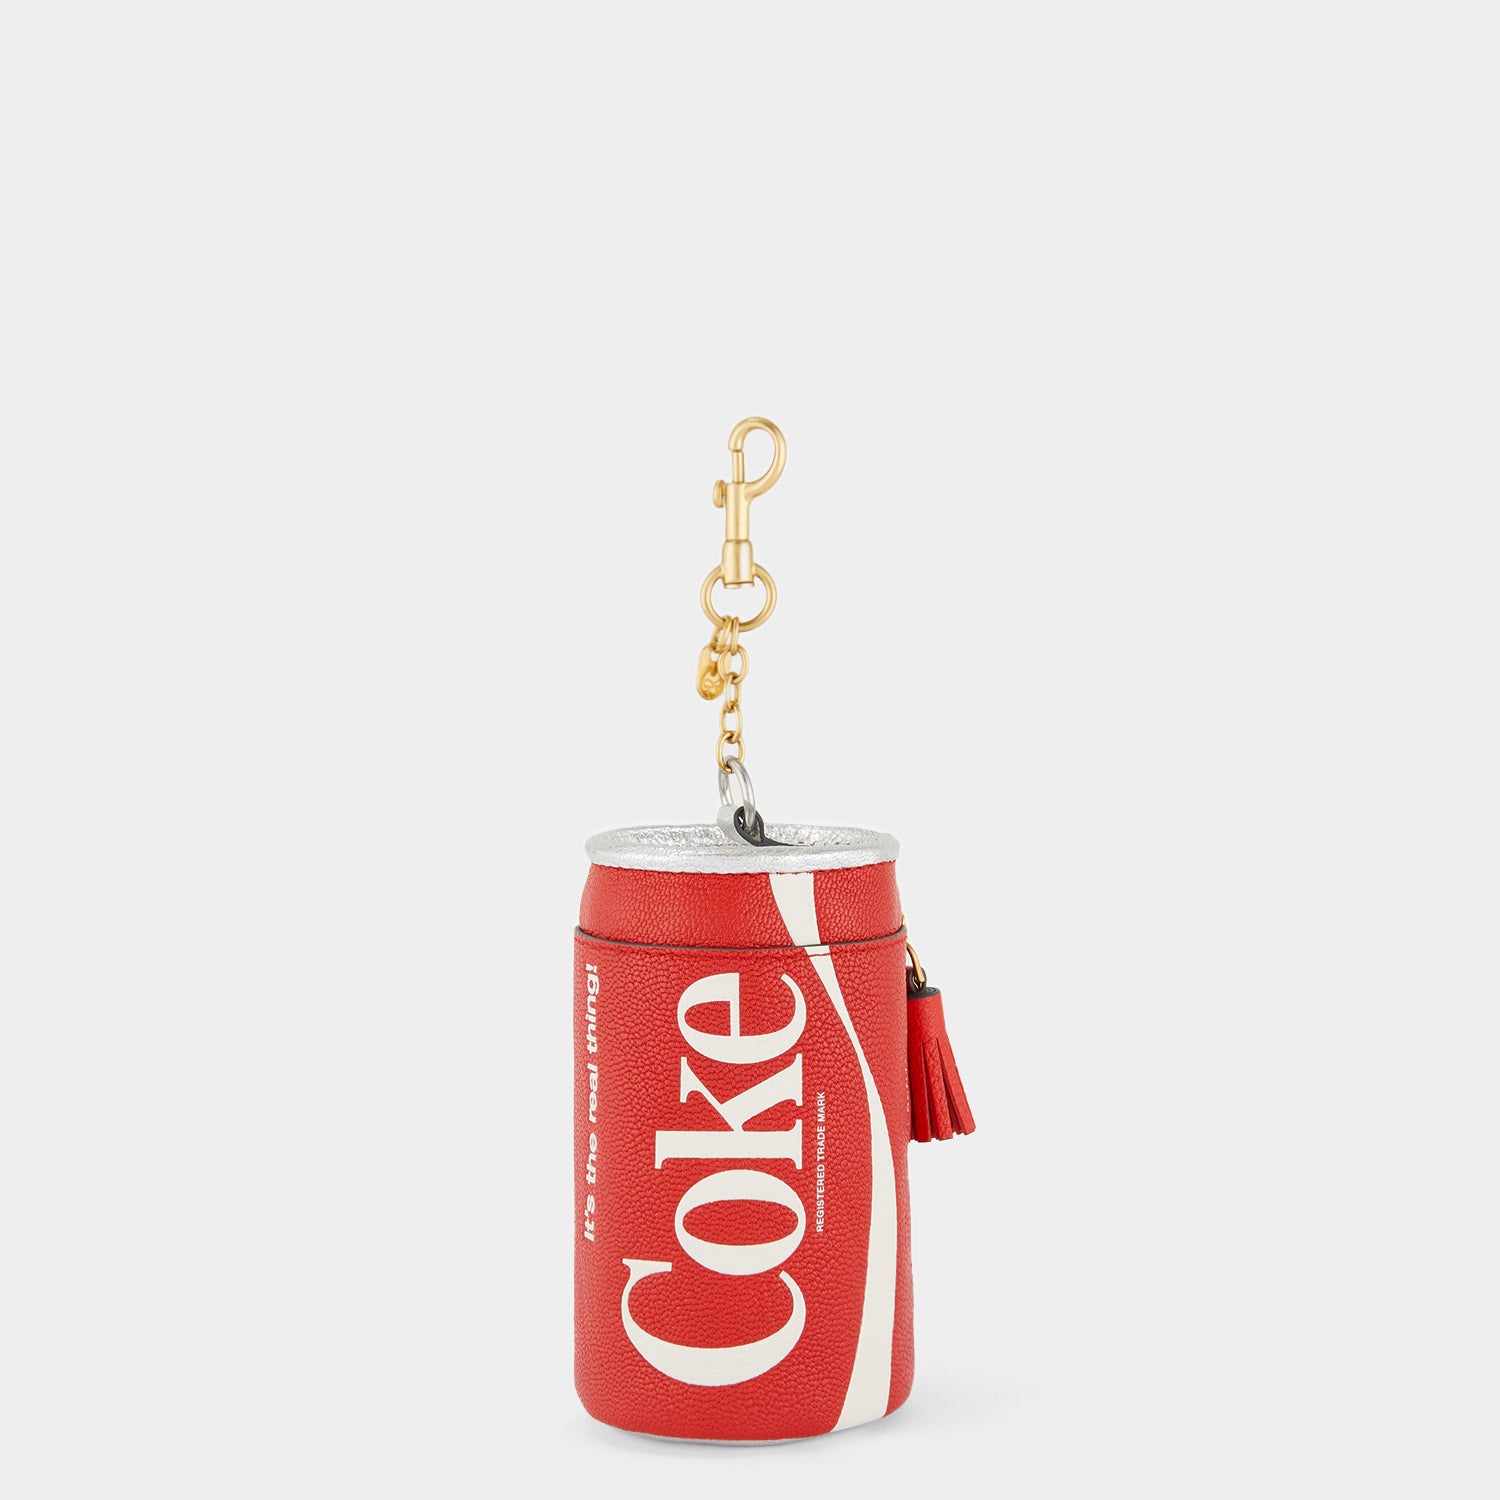 「Coca Cola」 コイン パース